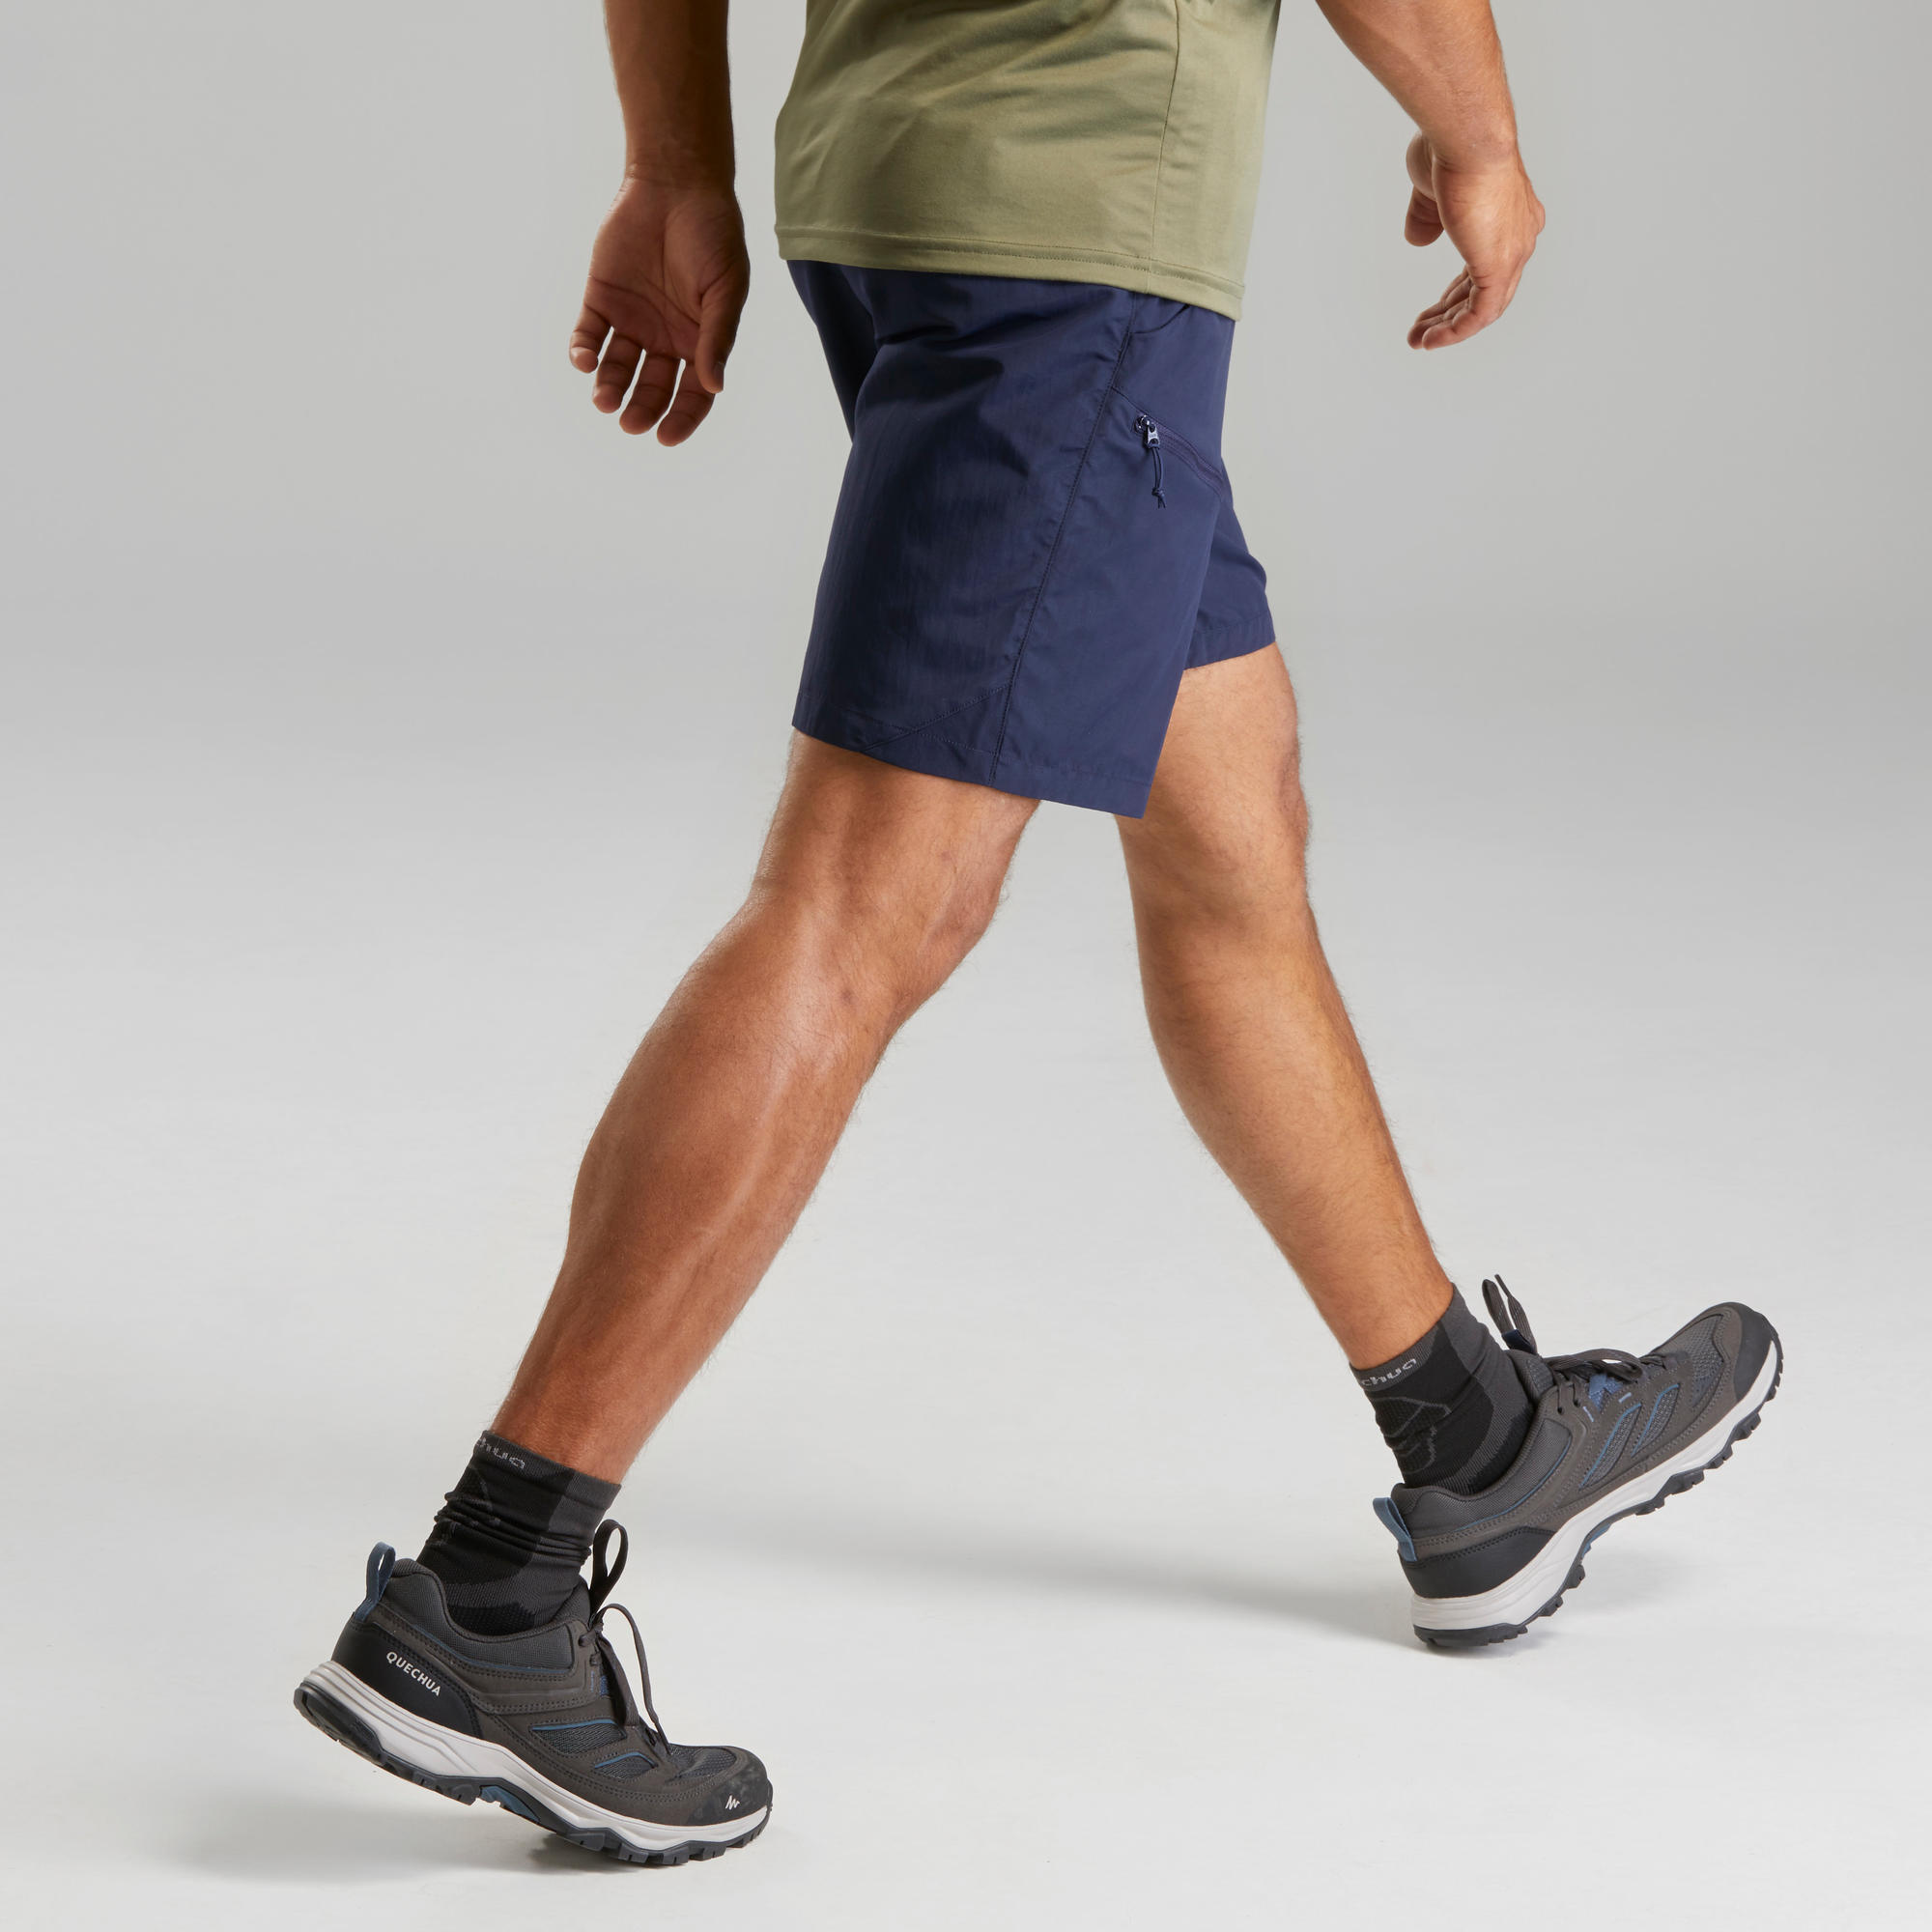 Men’s Hiking Shorts - MH100 6/6